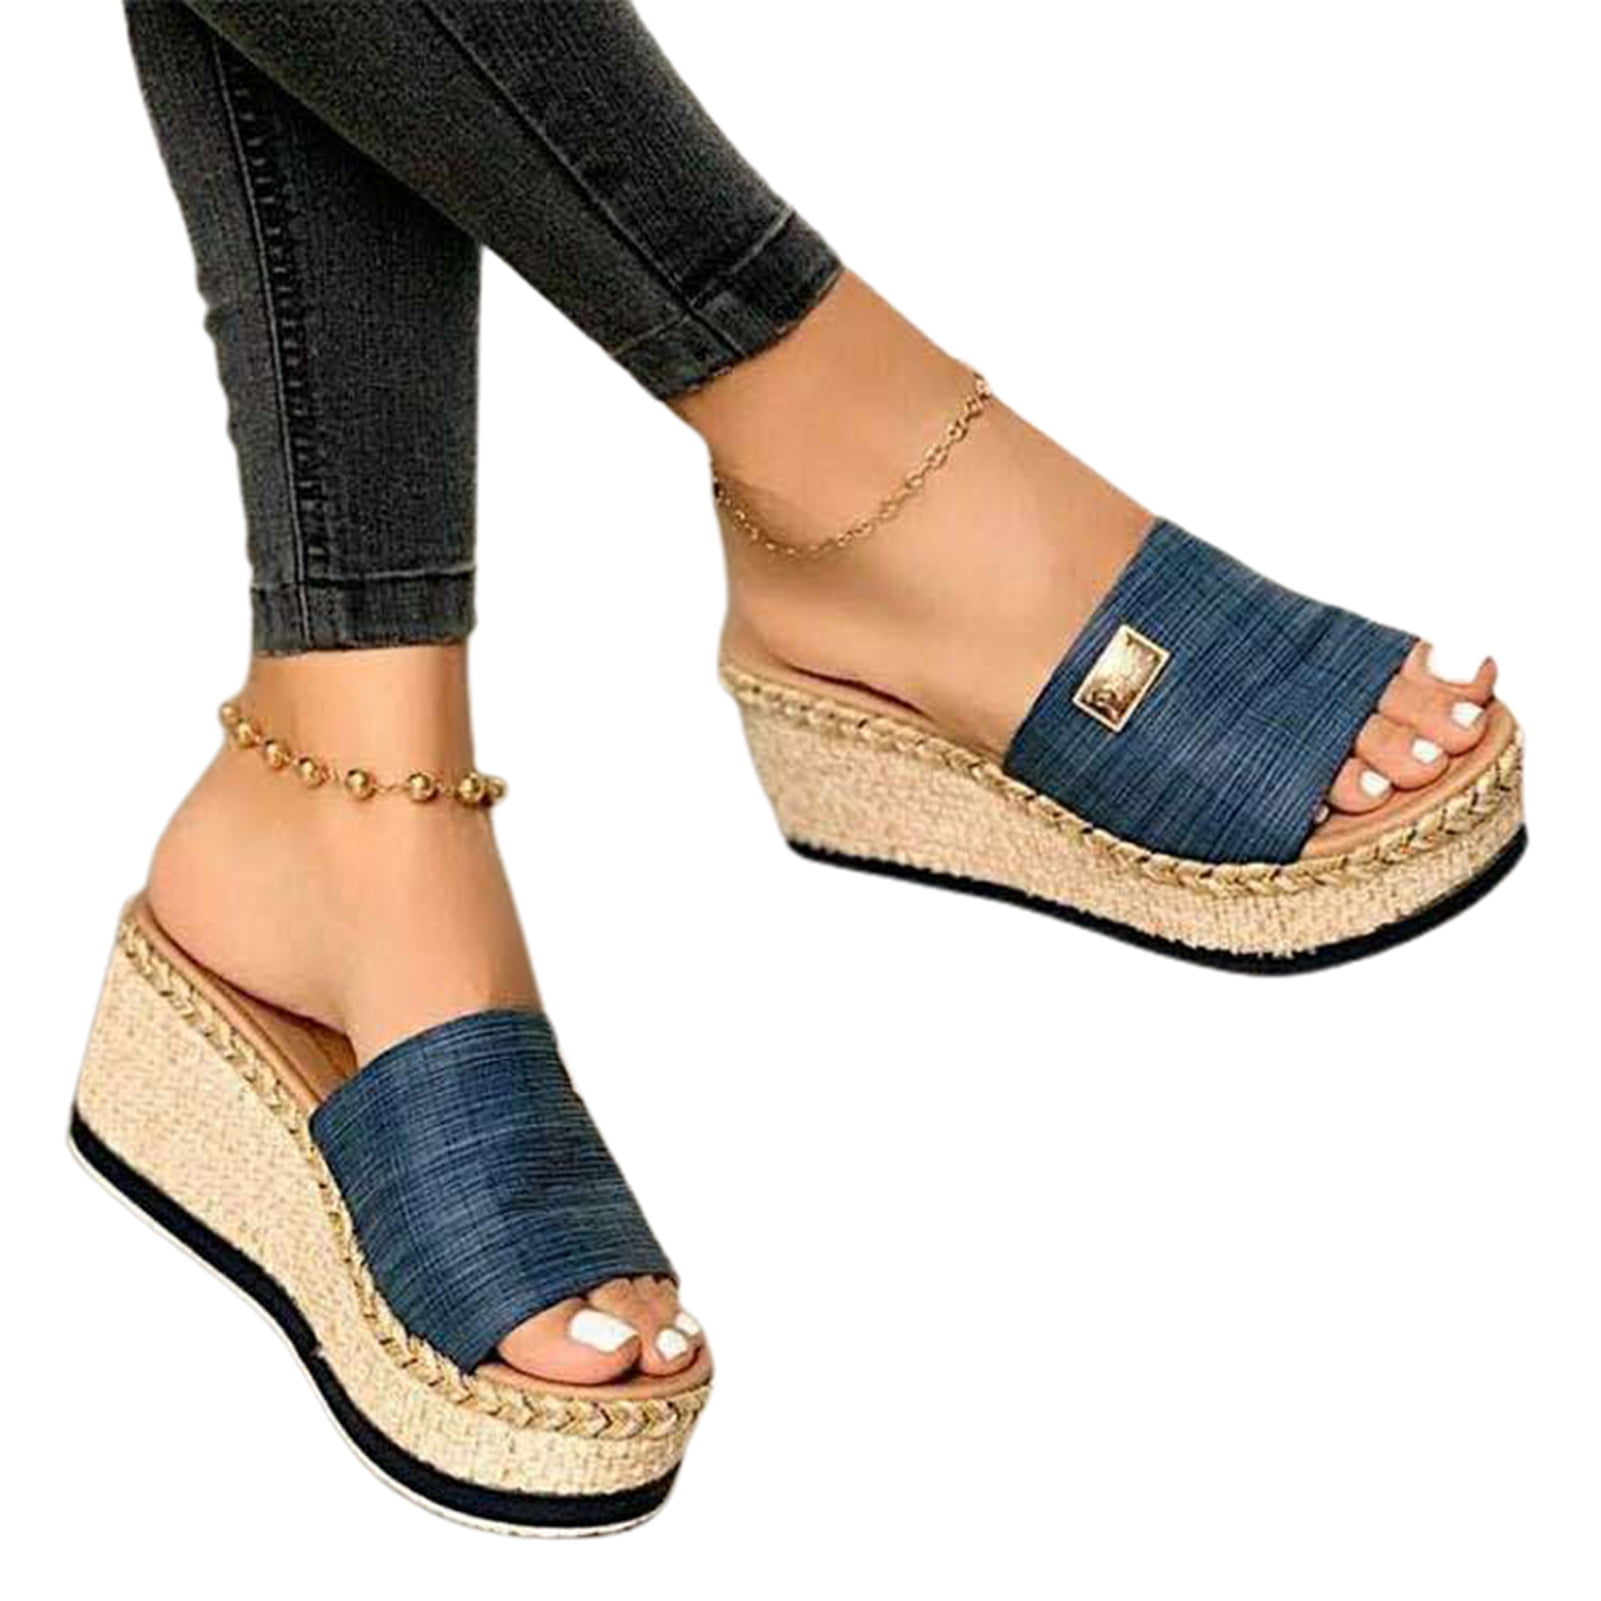 Women Wedges Platform Sandal Open Toe Thick Sole Summer Beach Shoes New - Walmart.com